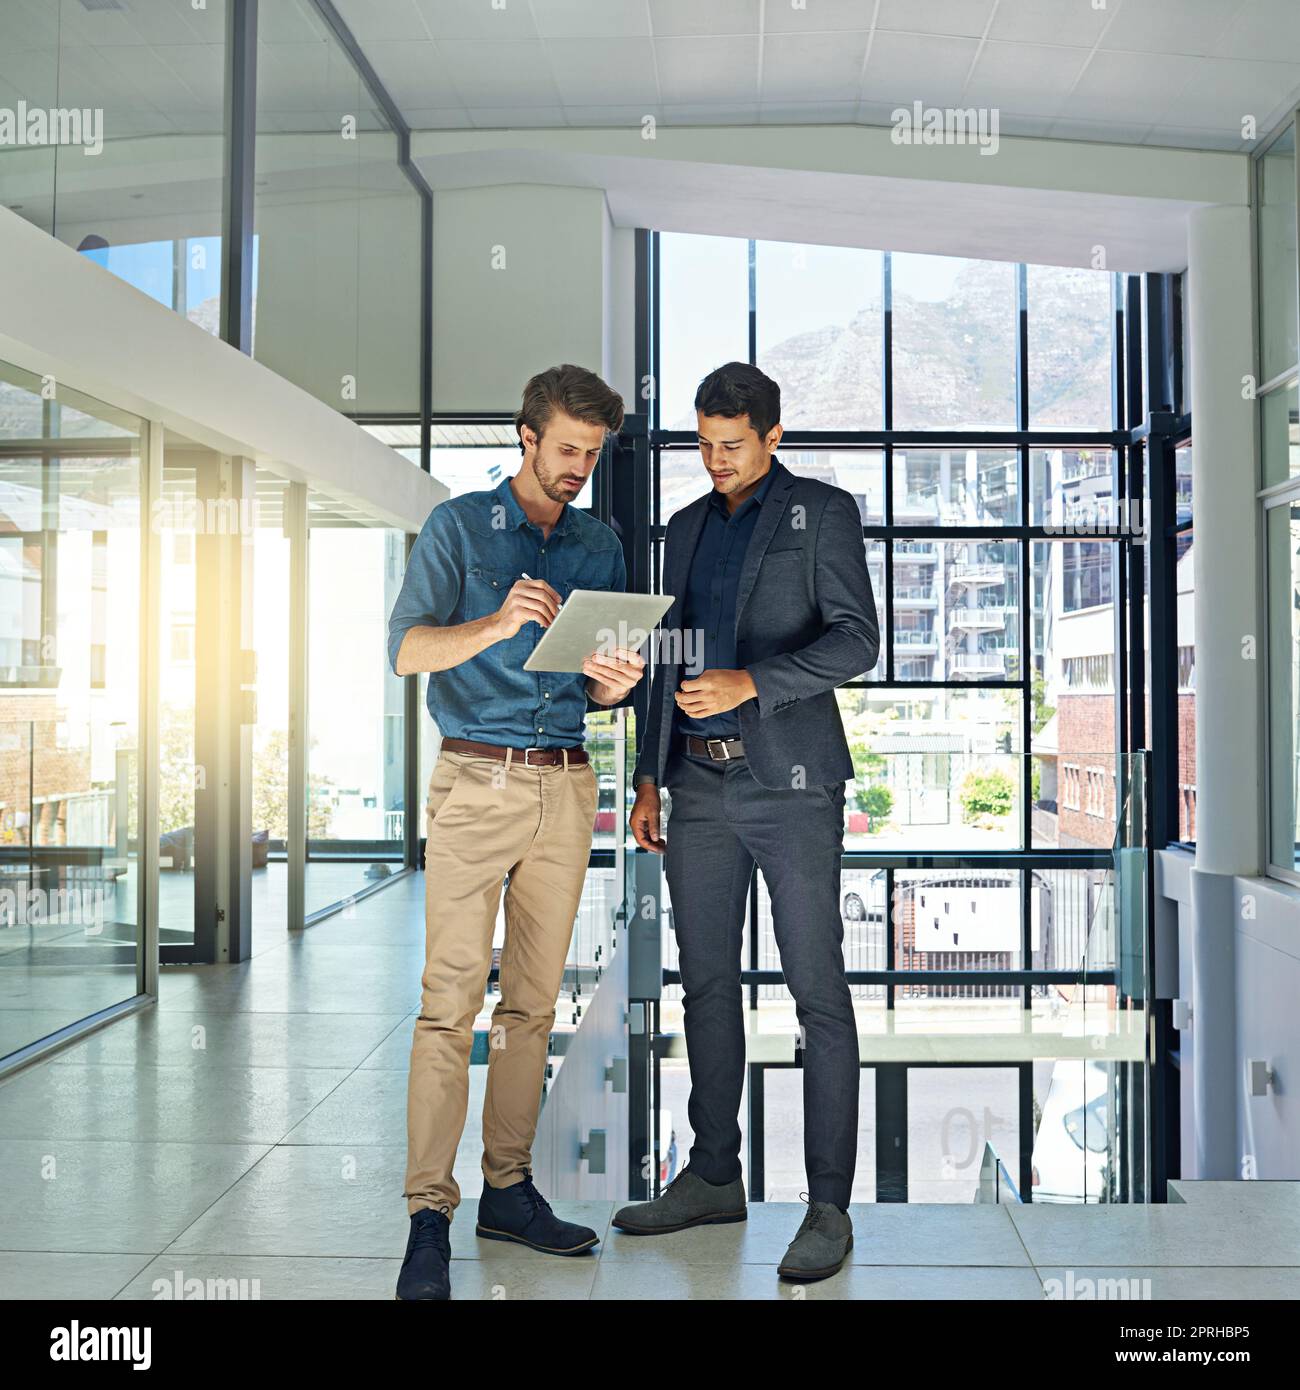 Daten und Fakten synchronisieren: Zwei Kollegen sprechen über ein digitales Tablet, während sie in einem modernen Büro stehen. Stockfoto